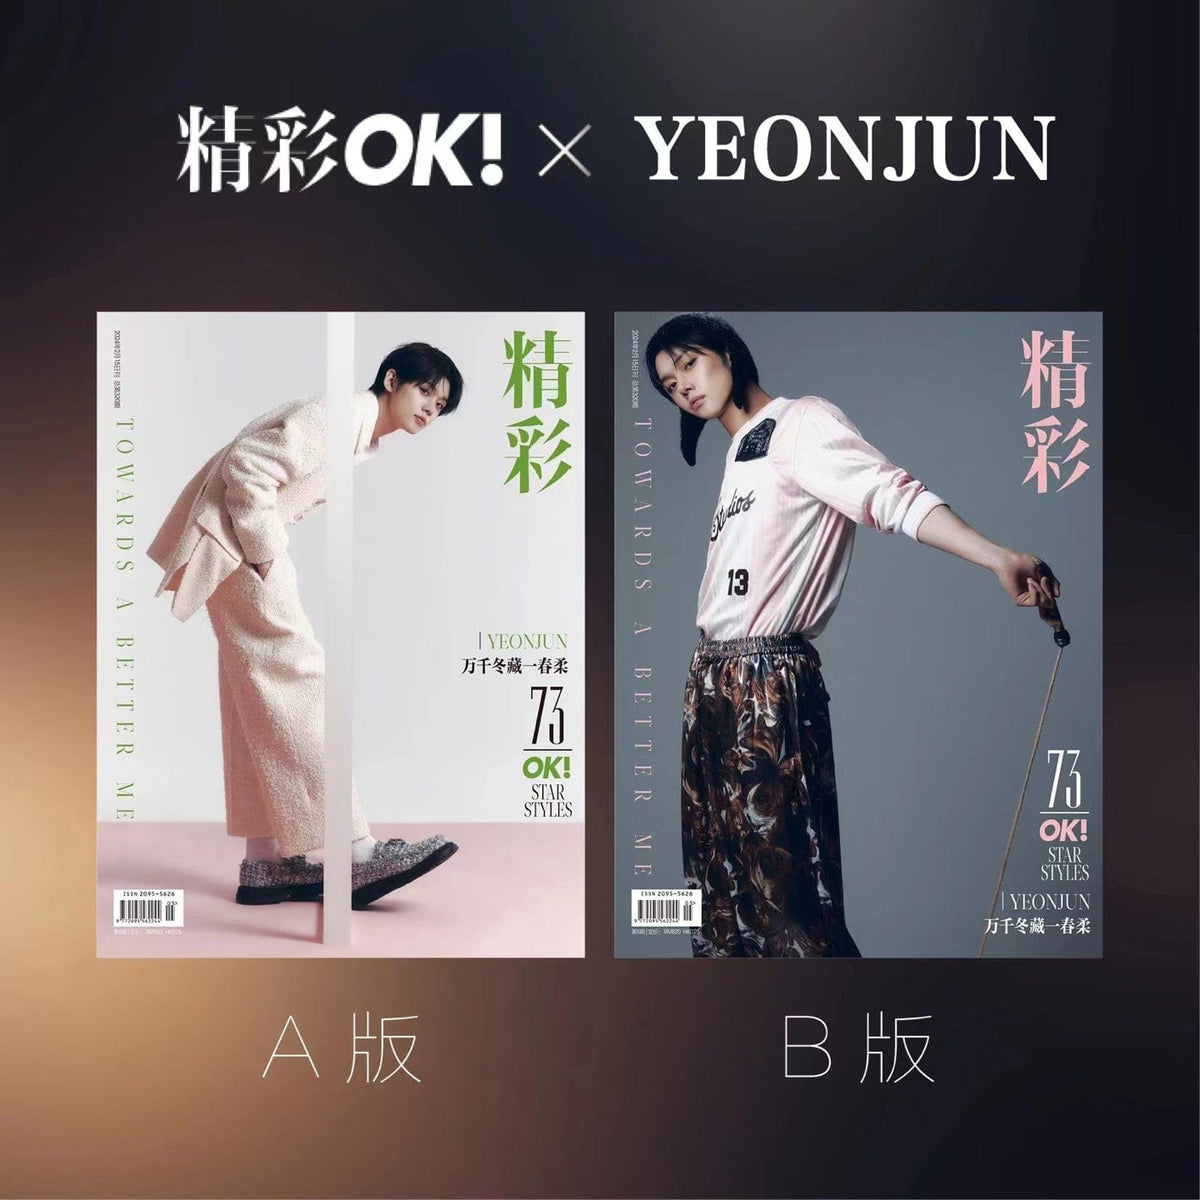 TXT (TOMORROW X TOGETHER) Magazine SET (A+B) YEONJUN for 精彩OK magazine